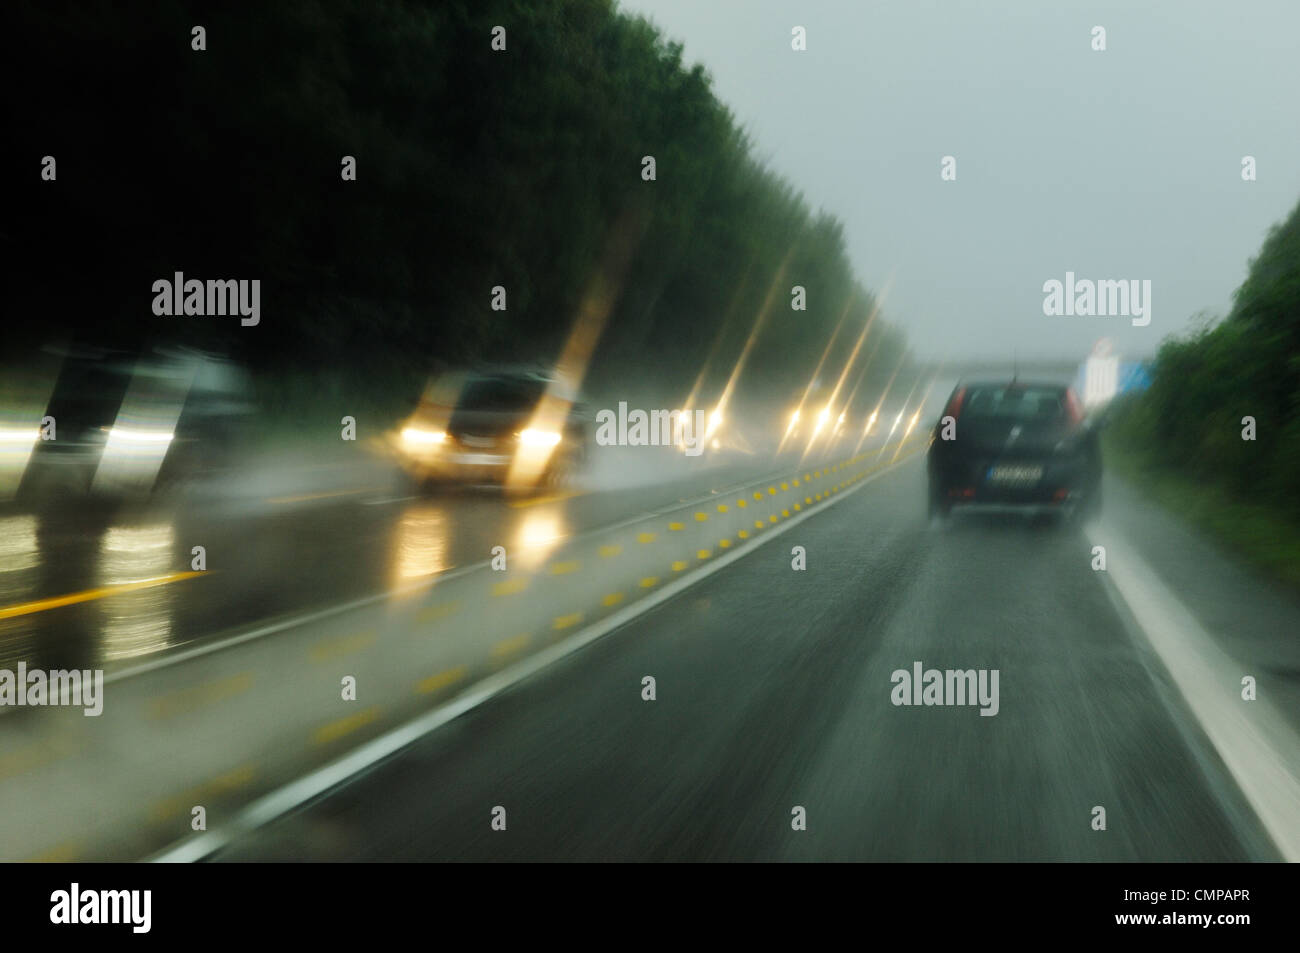 La deliberata motion blur. La guida su autostrada tedesca autostrada nella Renania settentrionale-Vestfalia vicino a Dusseldorf e di Essen sul bagnato Rainy day Foto Stock